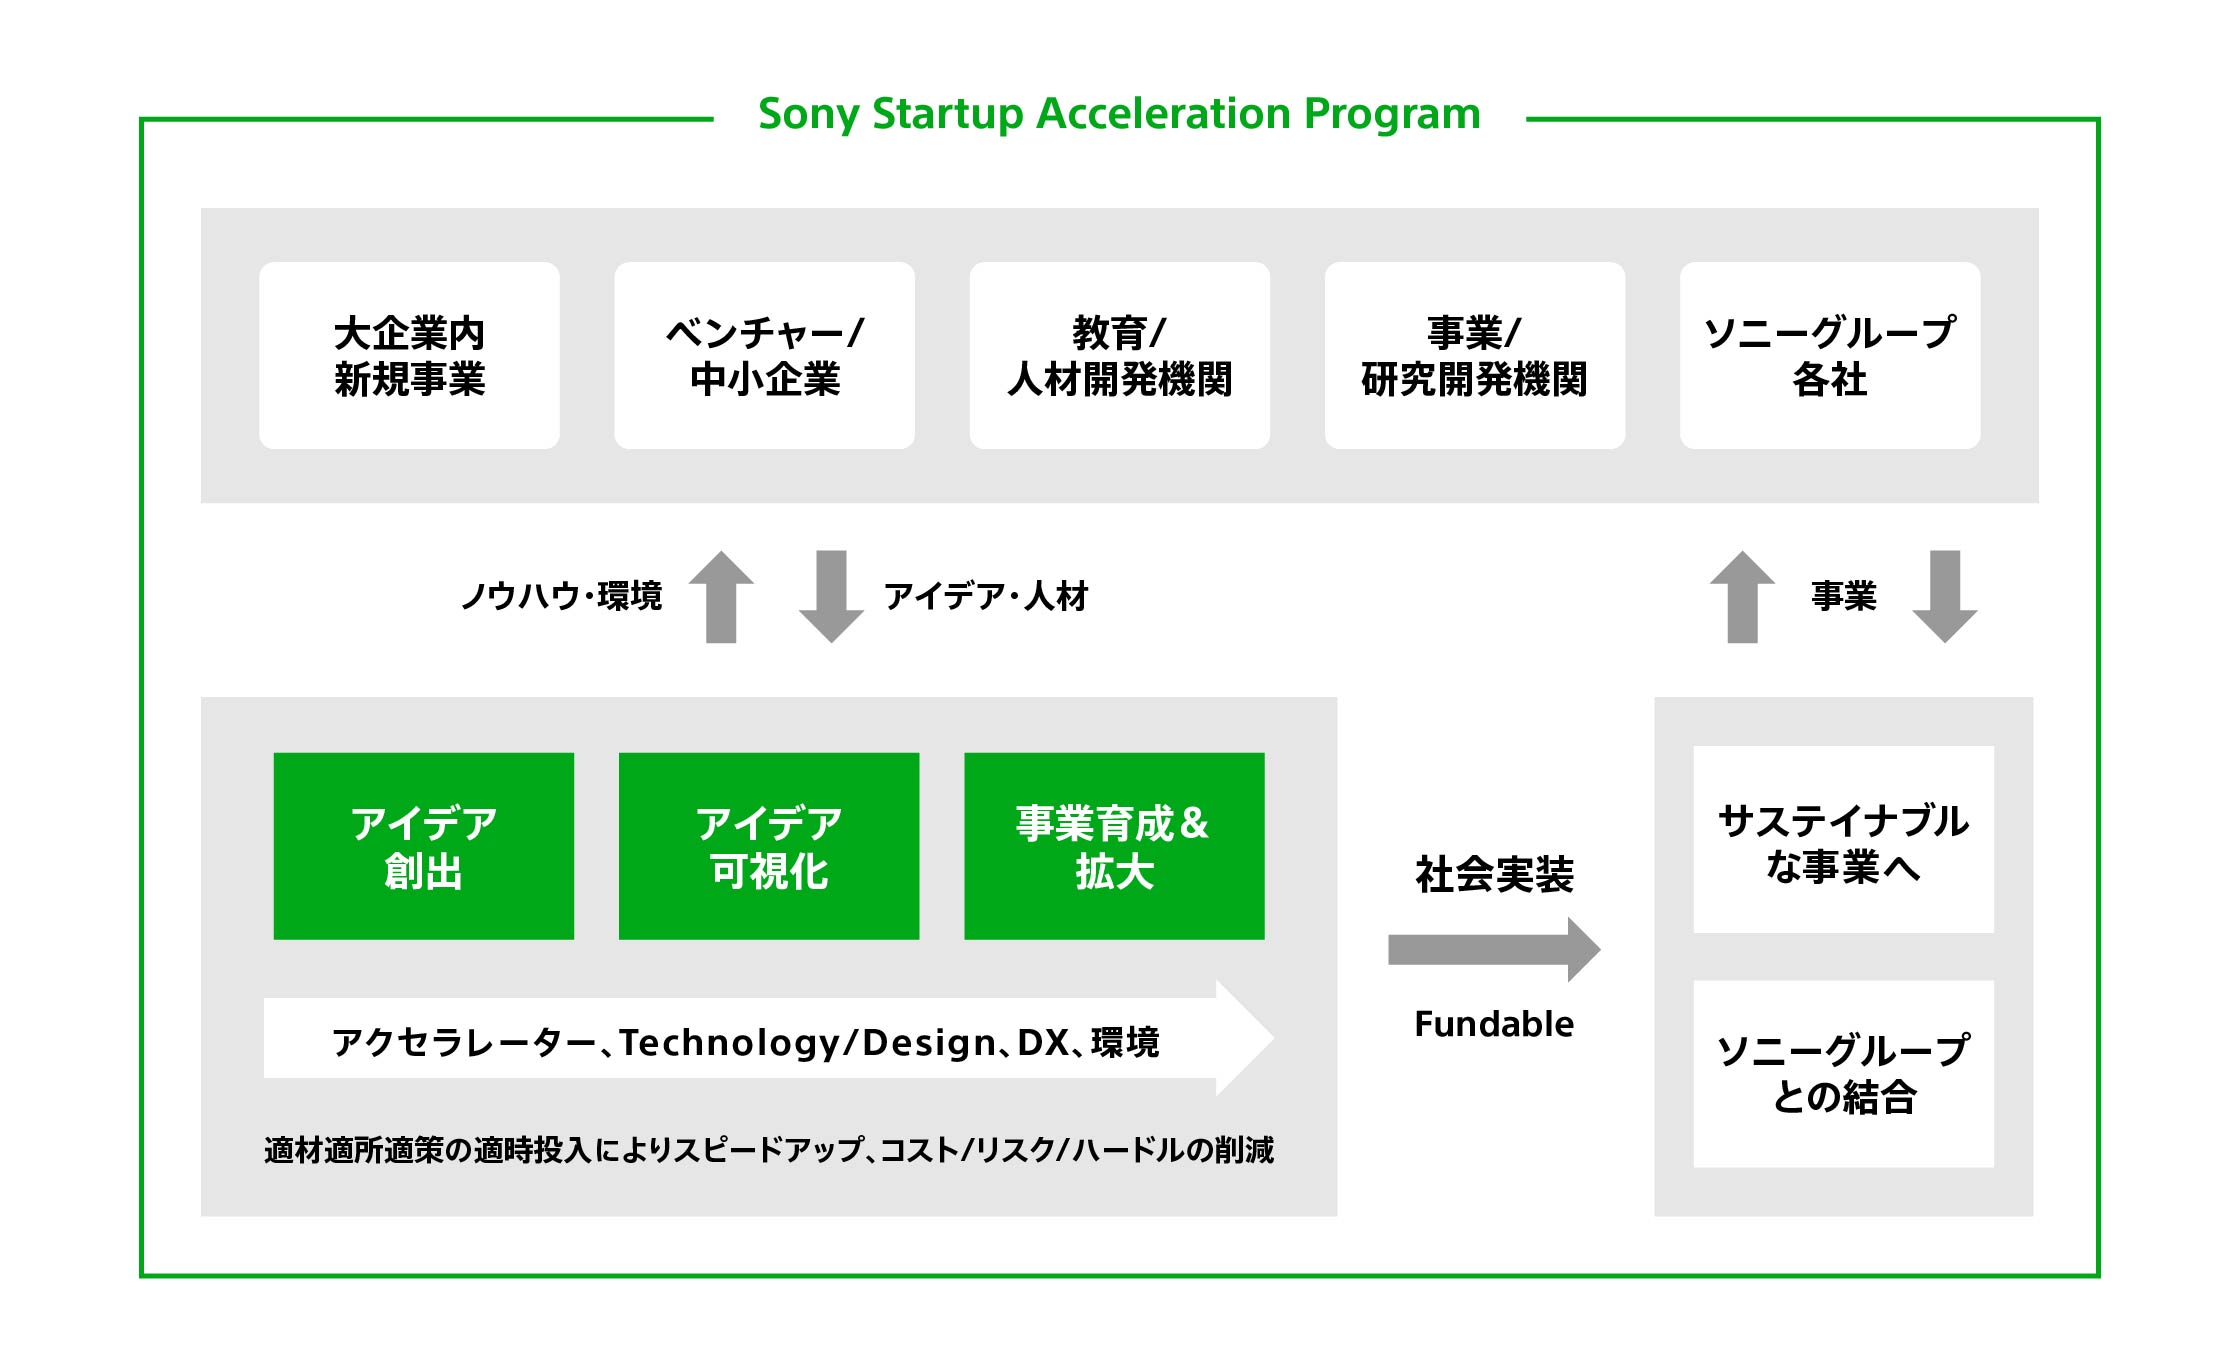 Sony Startup Acceleration Programの新規事業開発システムは「アイデア創出」「アイデア可視化」「事業育成＆拡大」のフェーズで構成されています。専任のアクセラレーターが伴走し、ソニーのTechnology／デザイン、環境をご提供することで新規事業をスピードアップすると同時に、コスト／リスク／ハードルを削減。アイデアの社会実装に向けて、最適な支援をご提供します。